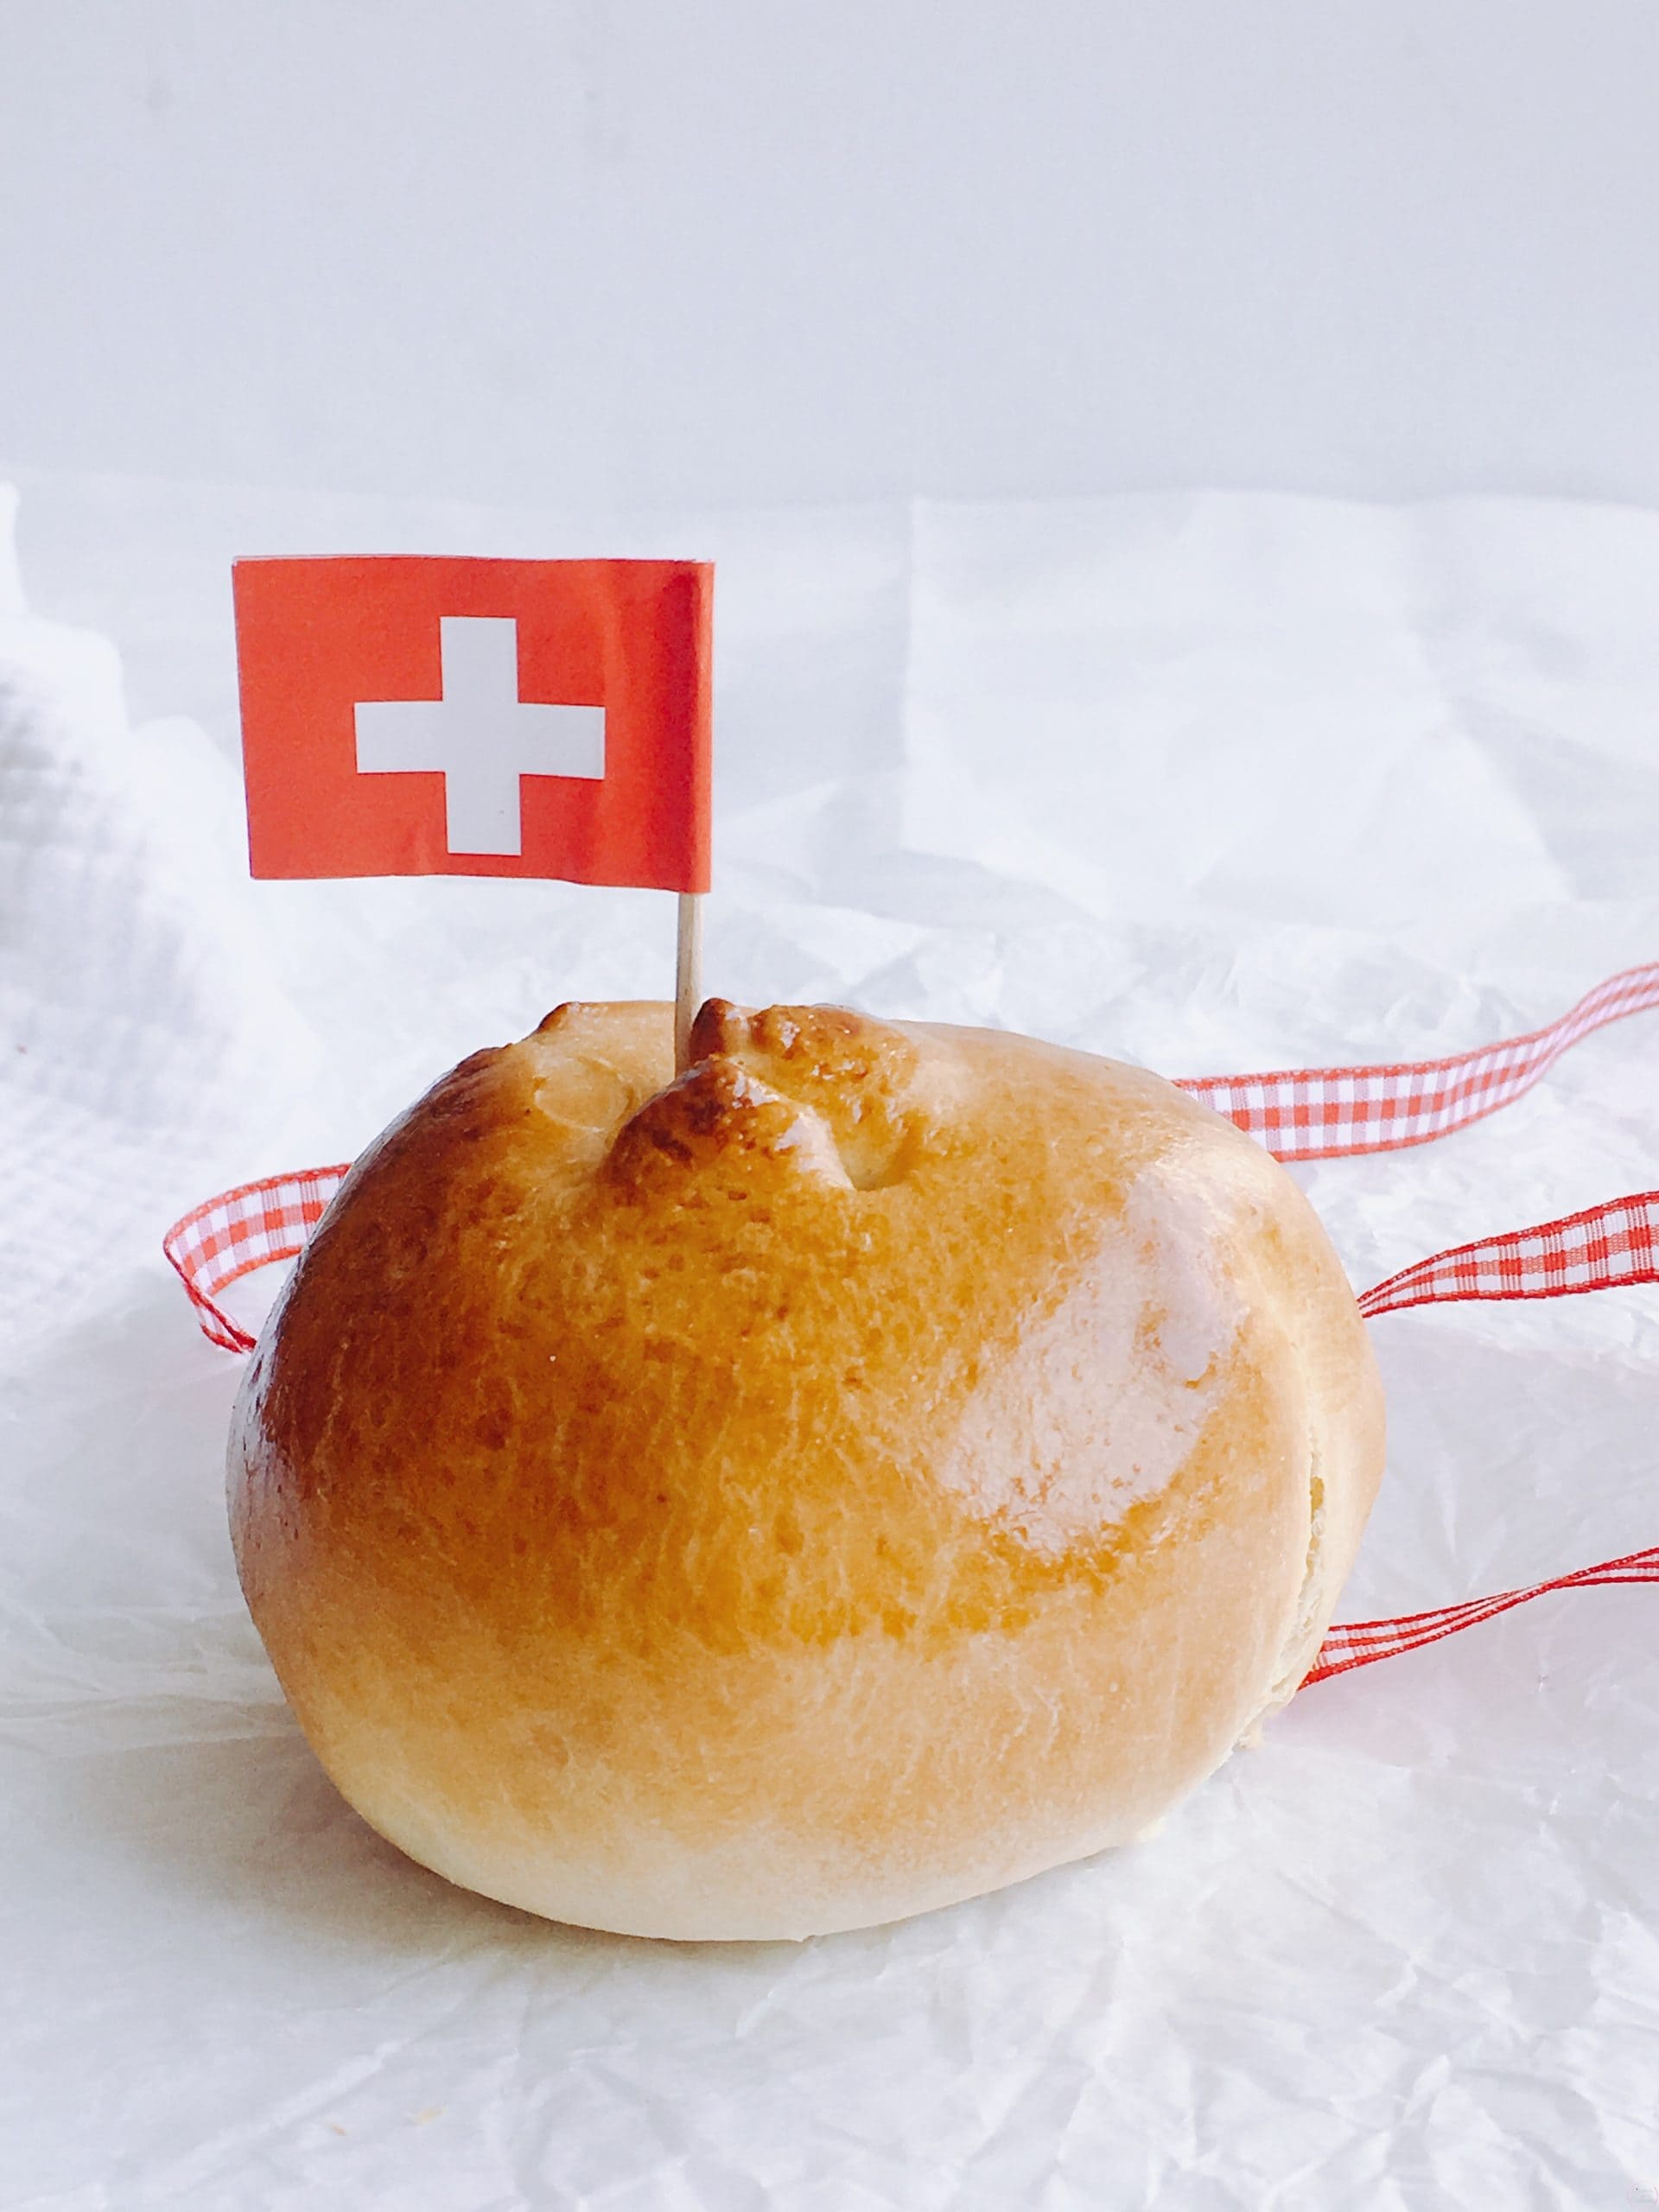 Petit pain 1er du août - recette suisse - recette ludique à faire avec les enfants - Citronelle and Cardamome